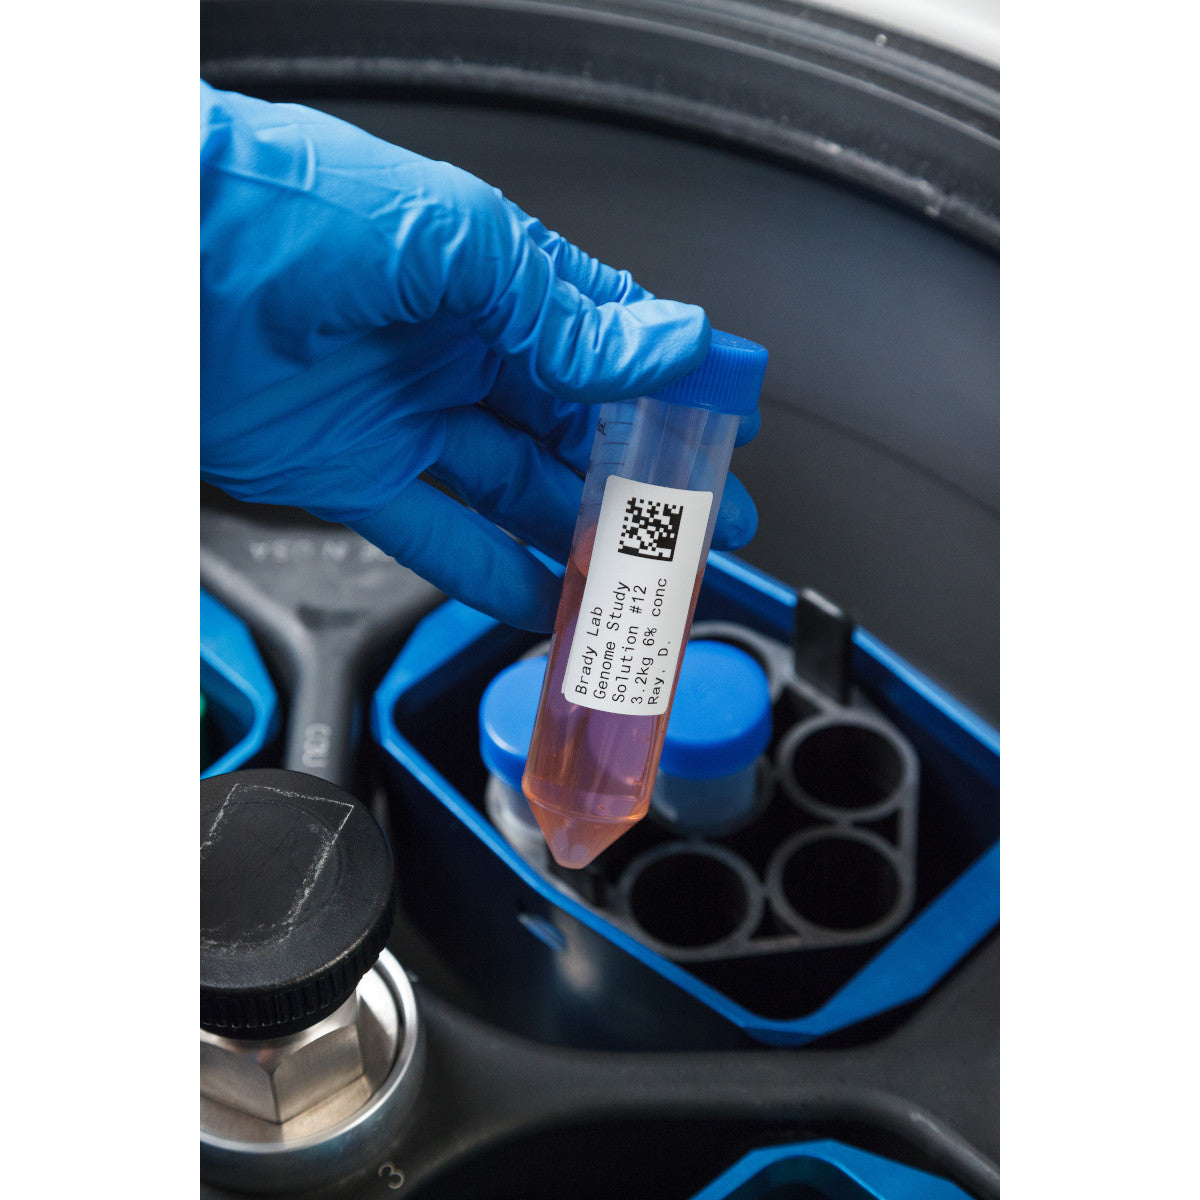 011265 - Etichette per criogenia e autoclave in poliestere core 76 mm ROTOLO DA 3000 ETICHETTE